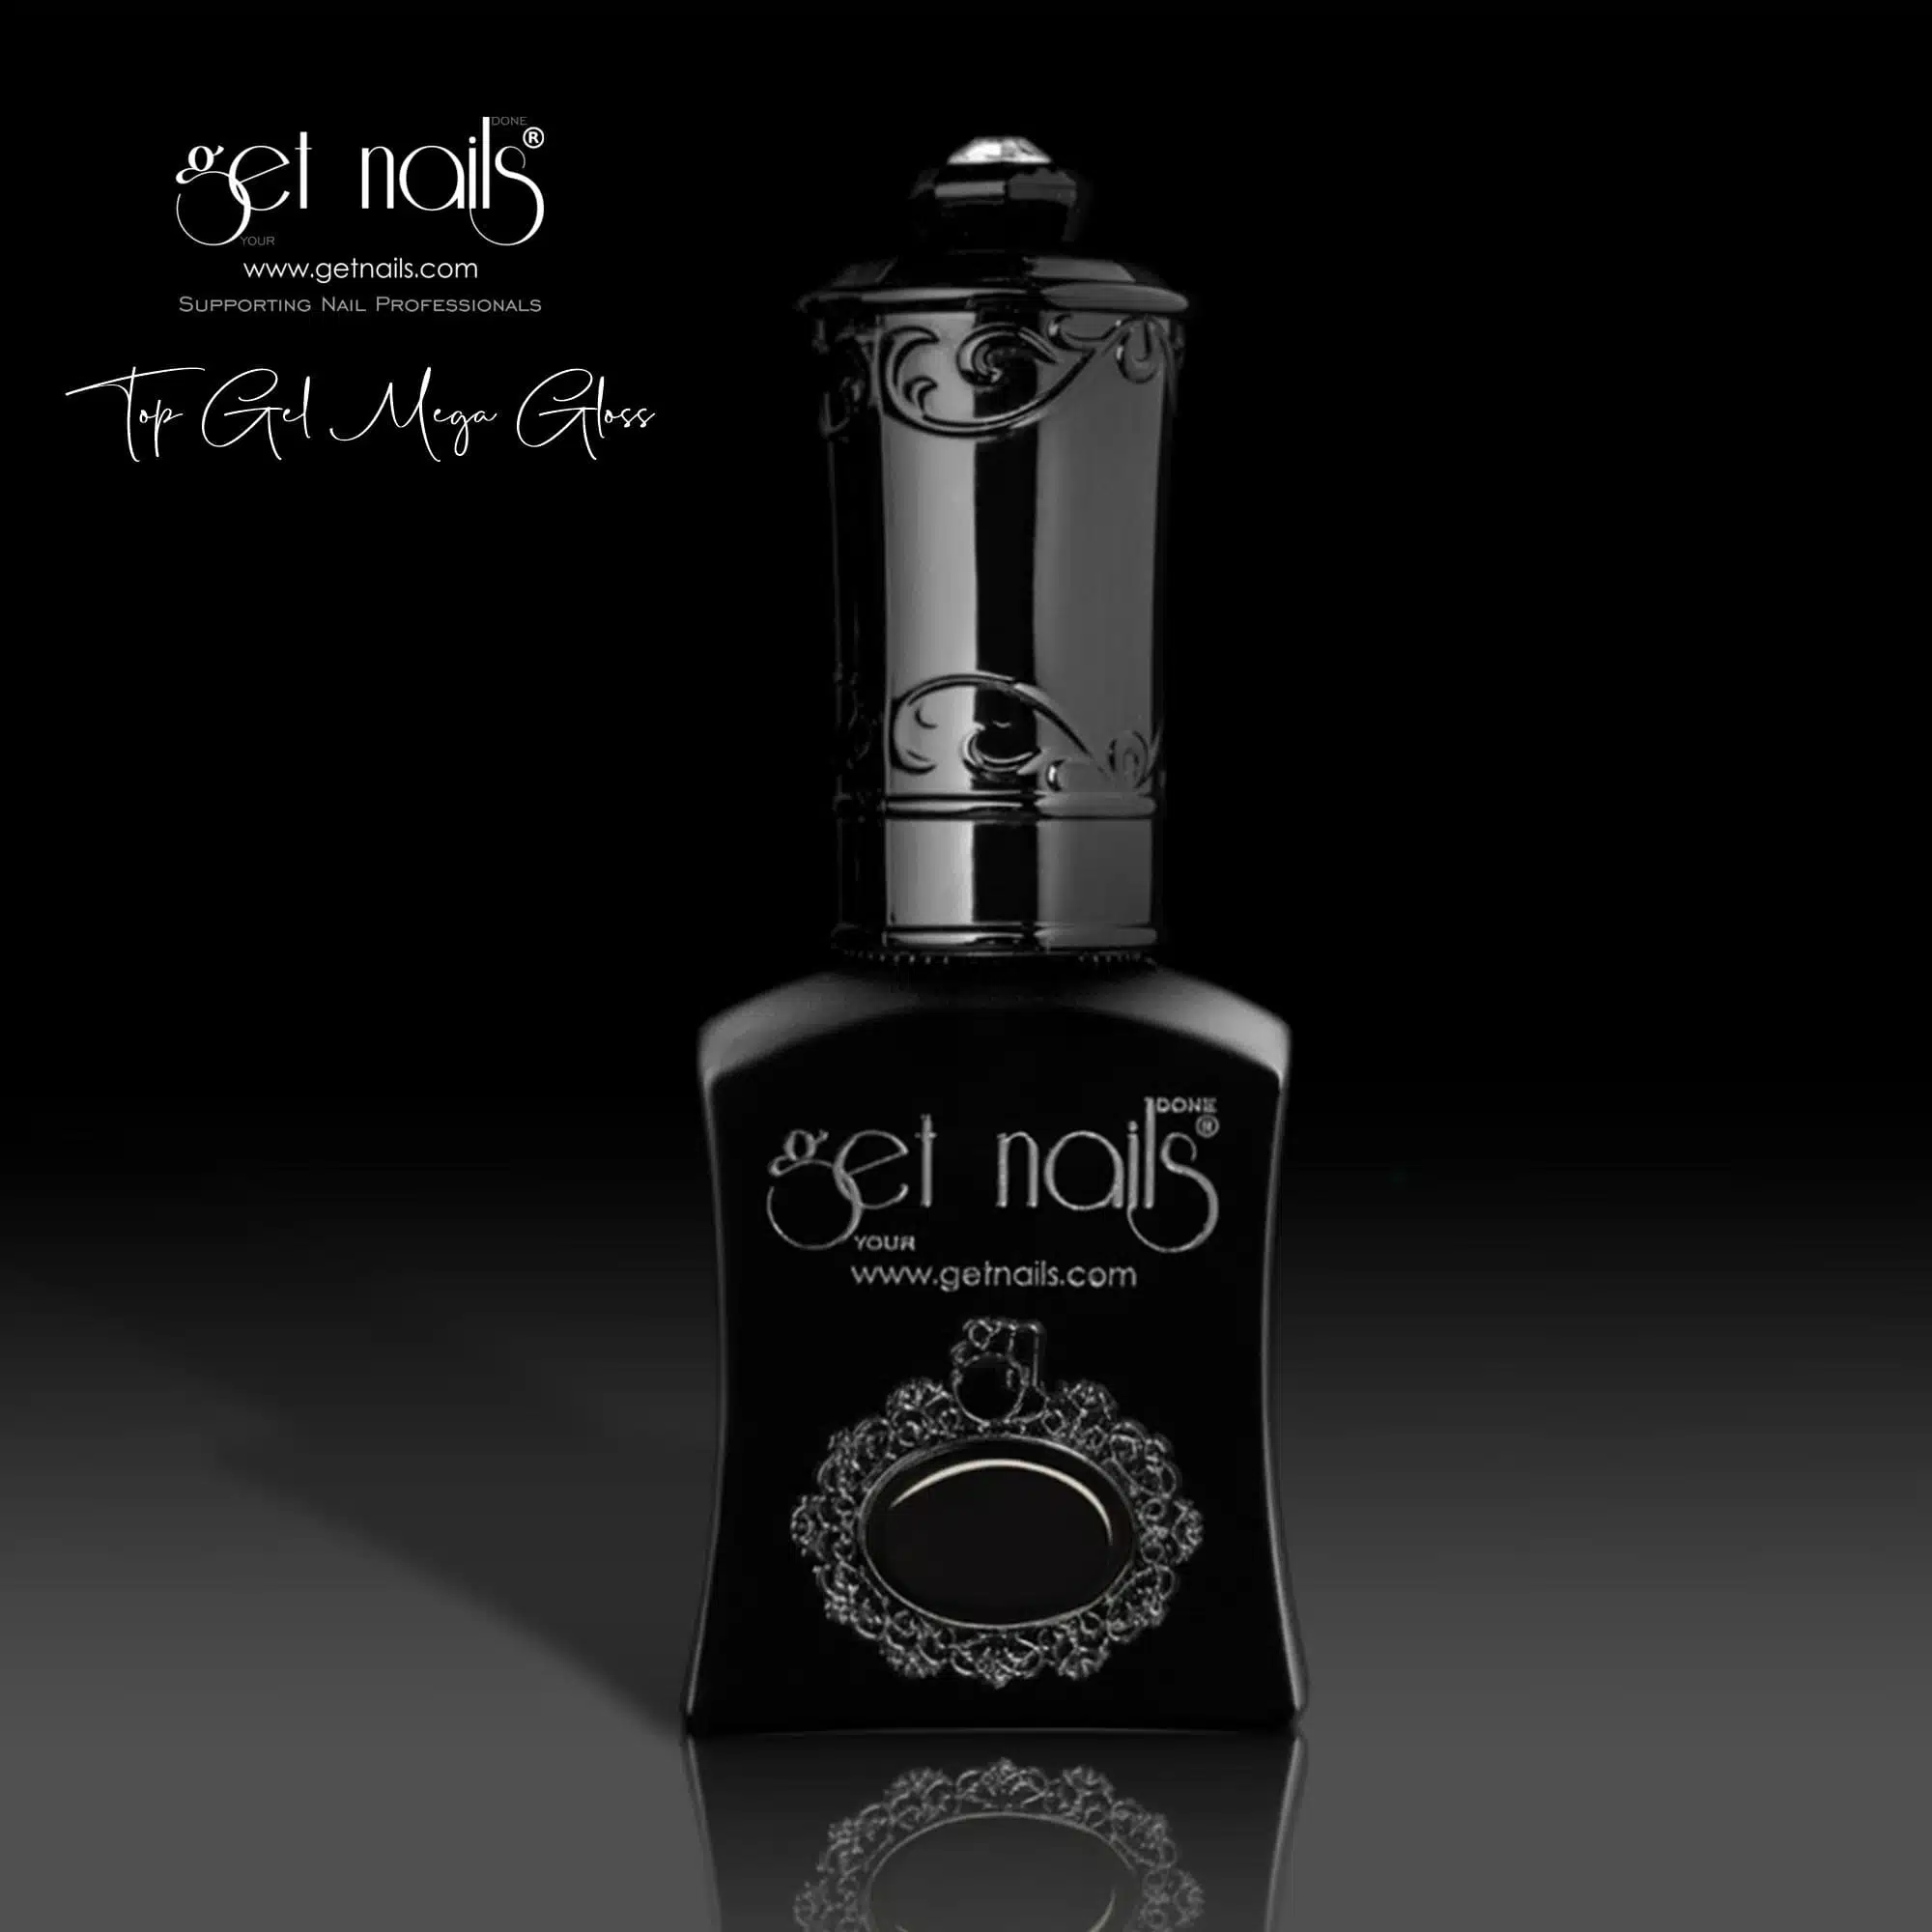 Get Nails Austria - Top Coat Mega Gloss 15g